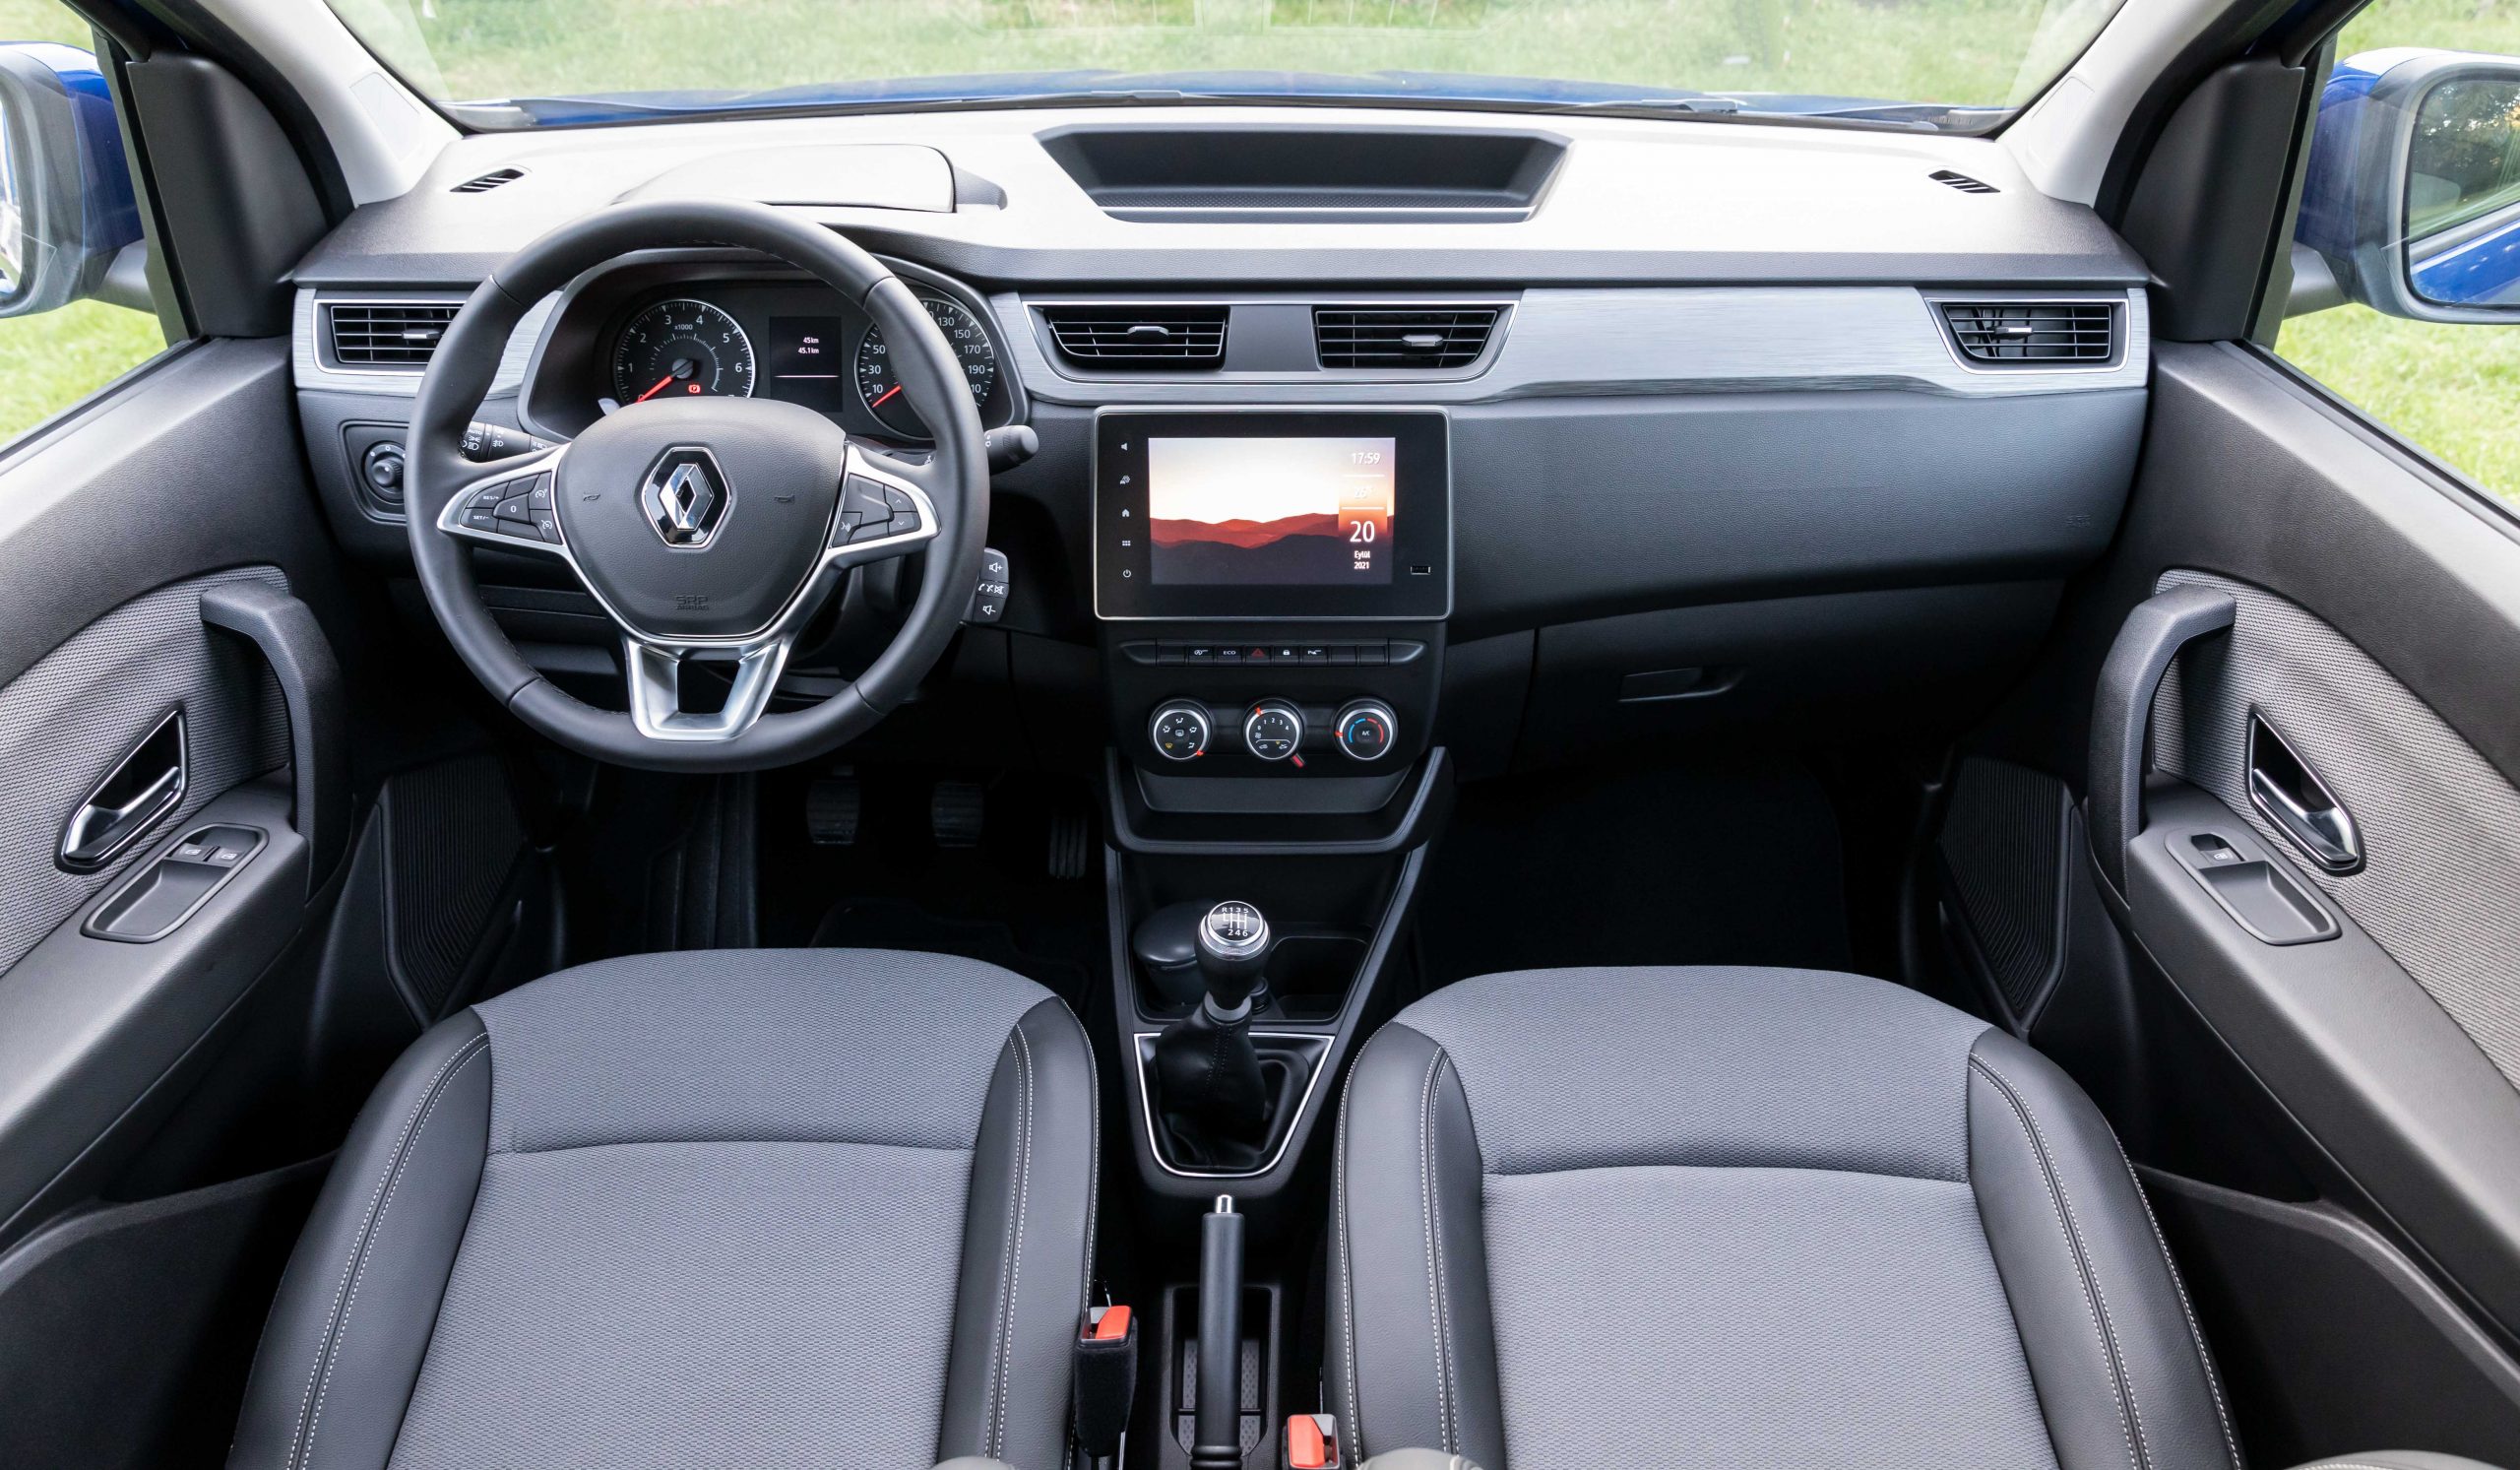 Renault Express kokpit direksiyon ve multimedya